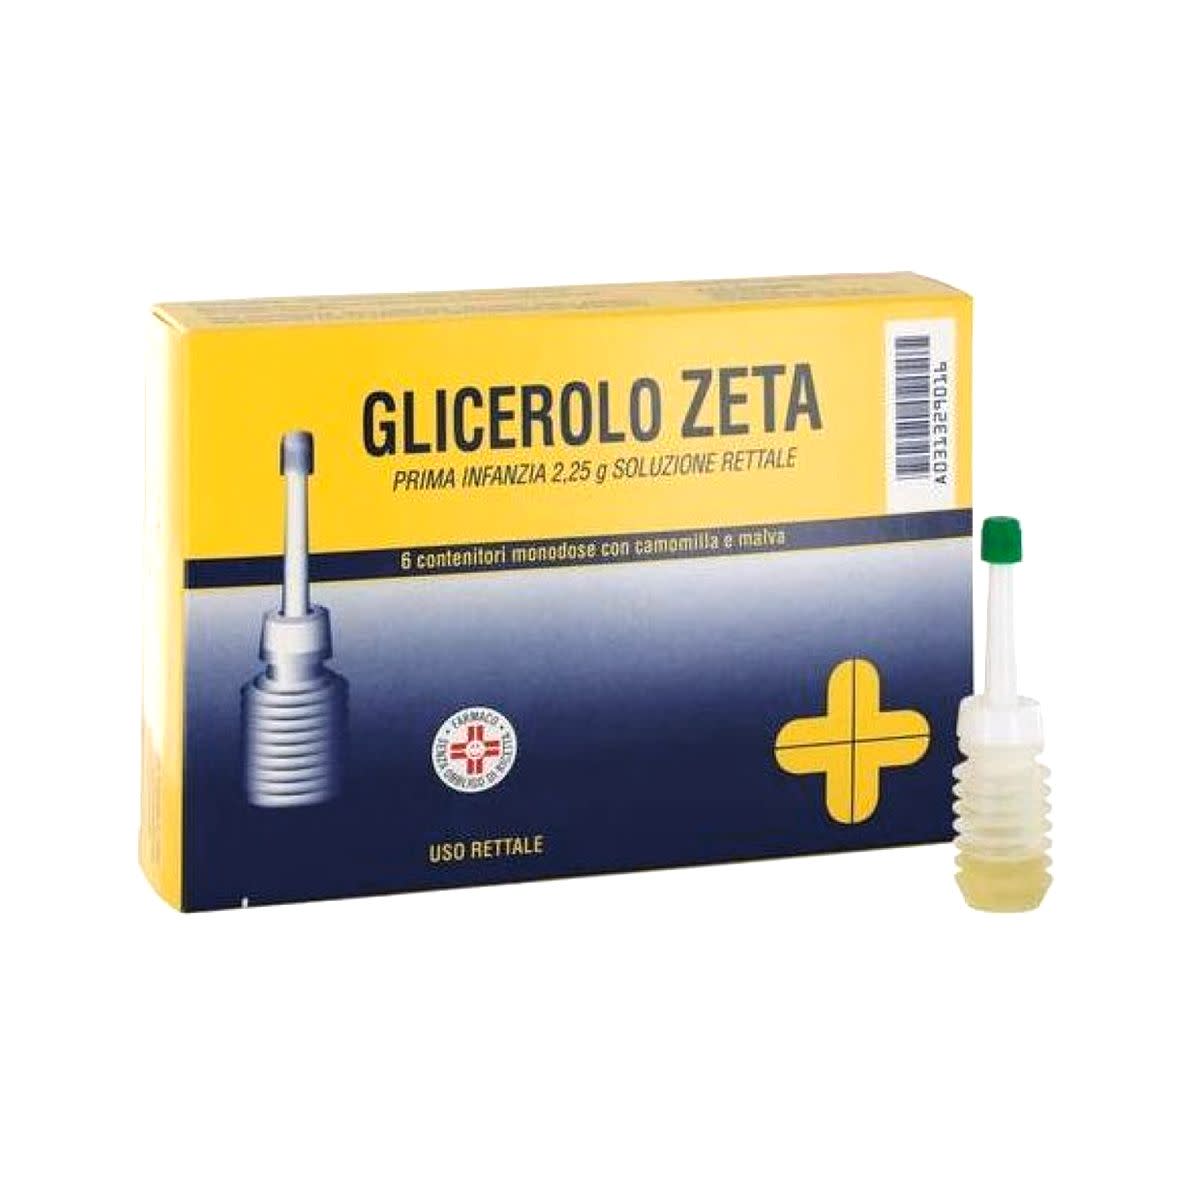 031329016 - Zeta Glicerolo Trattamento Stitichezza 6 contenitori monodose - 7875879_1.jpg